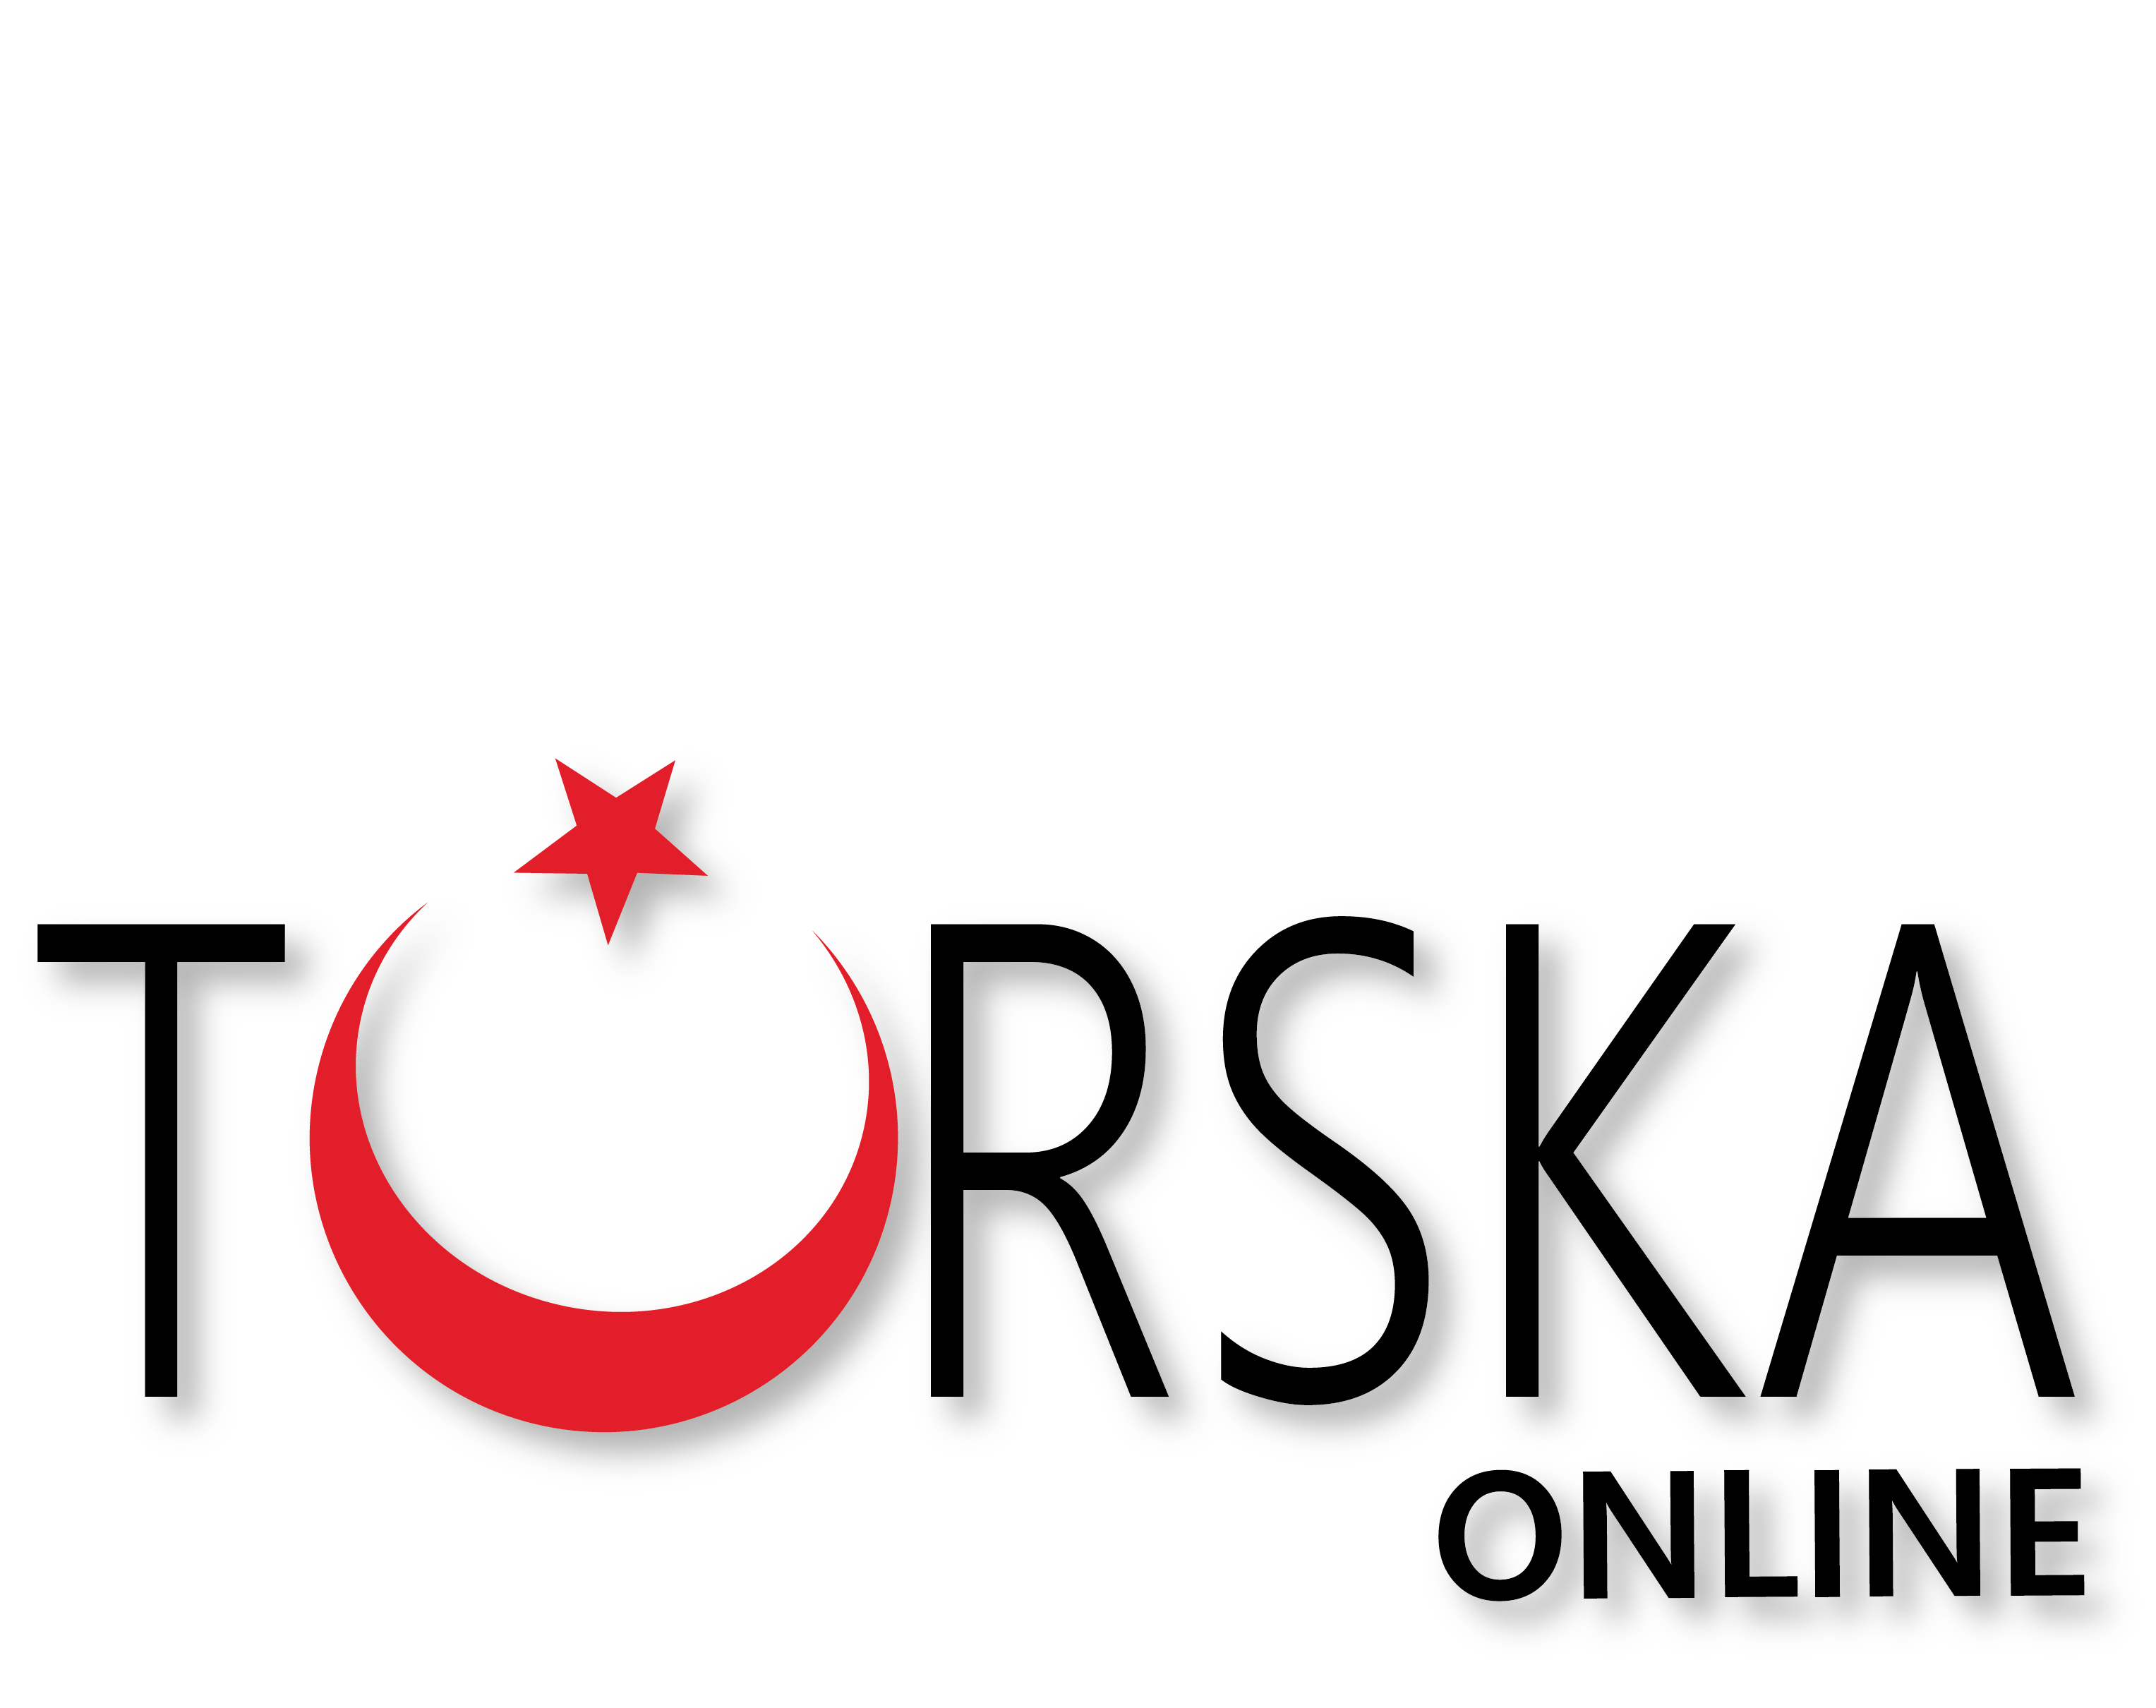 Turska online